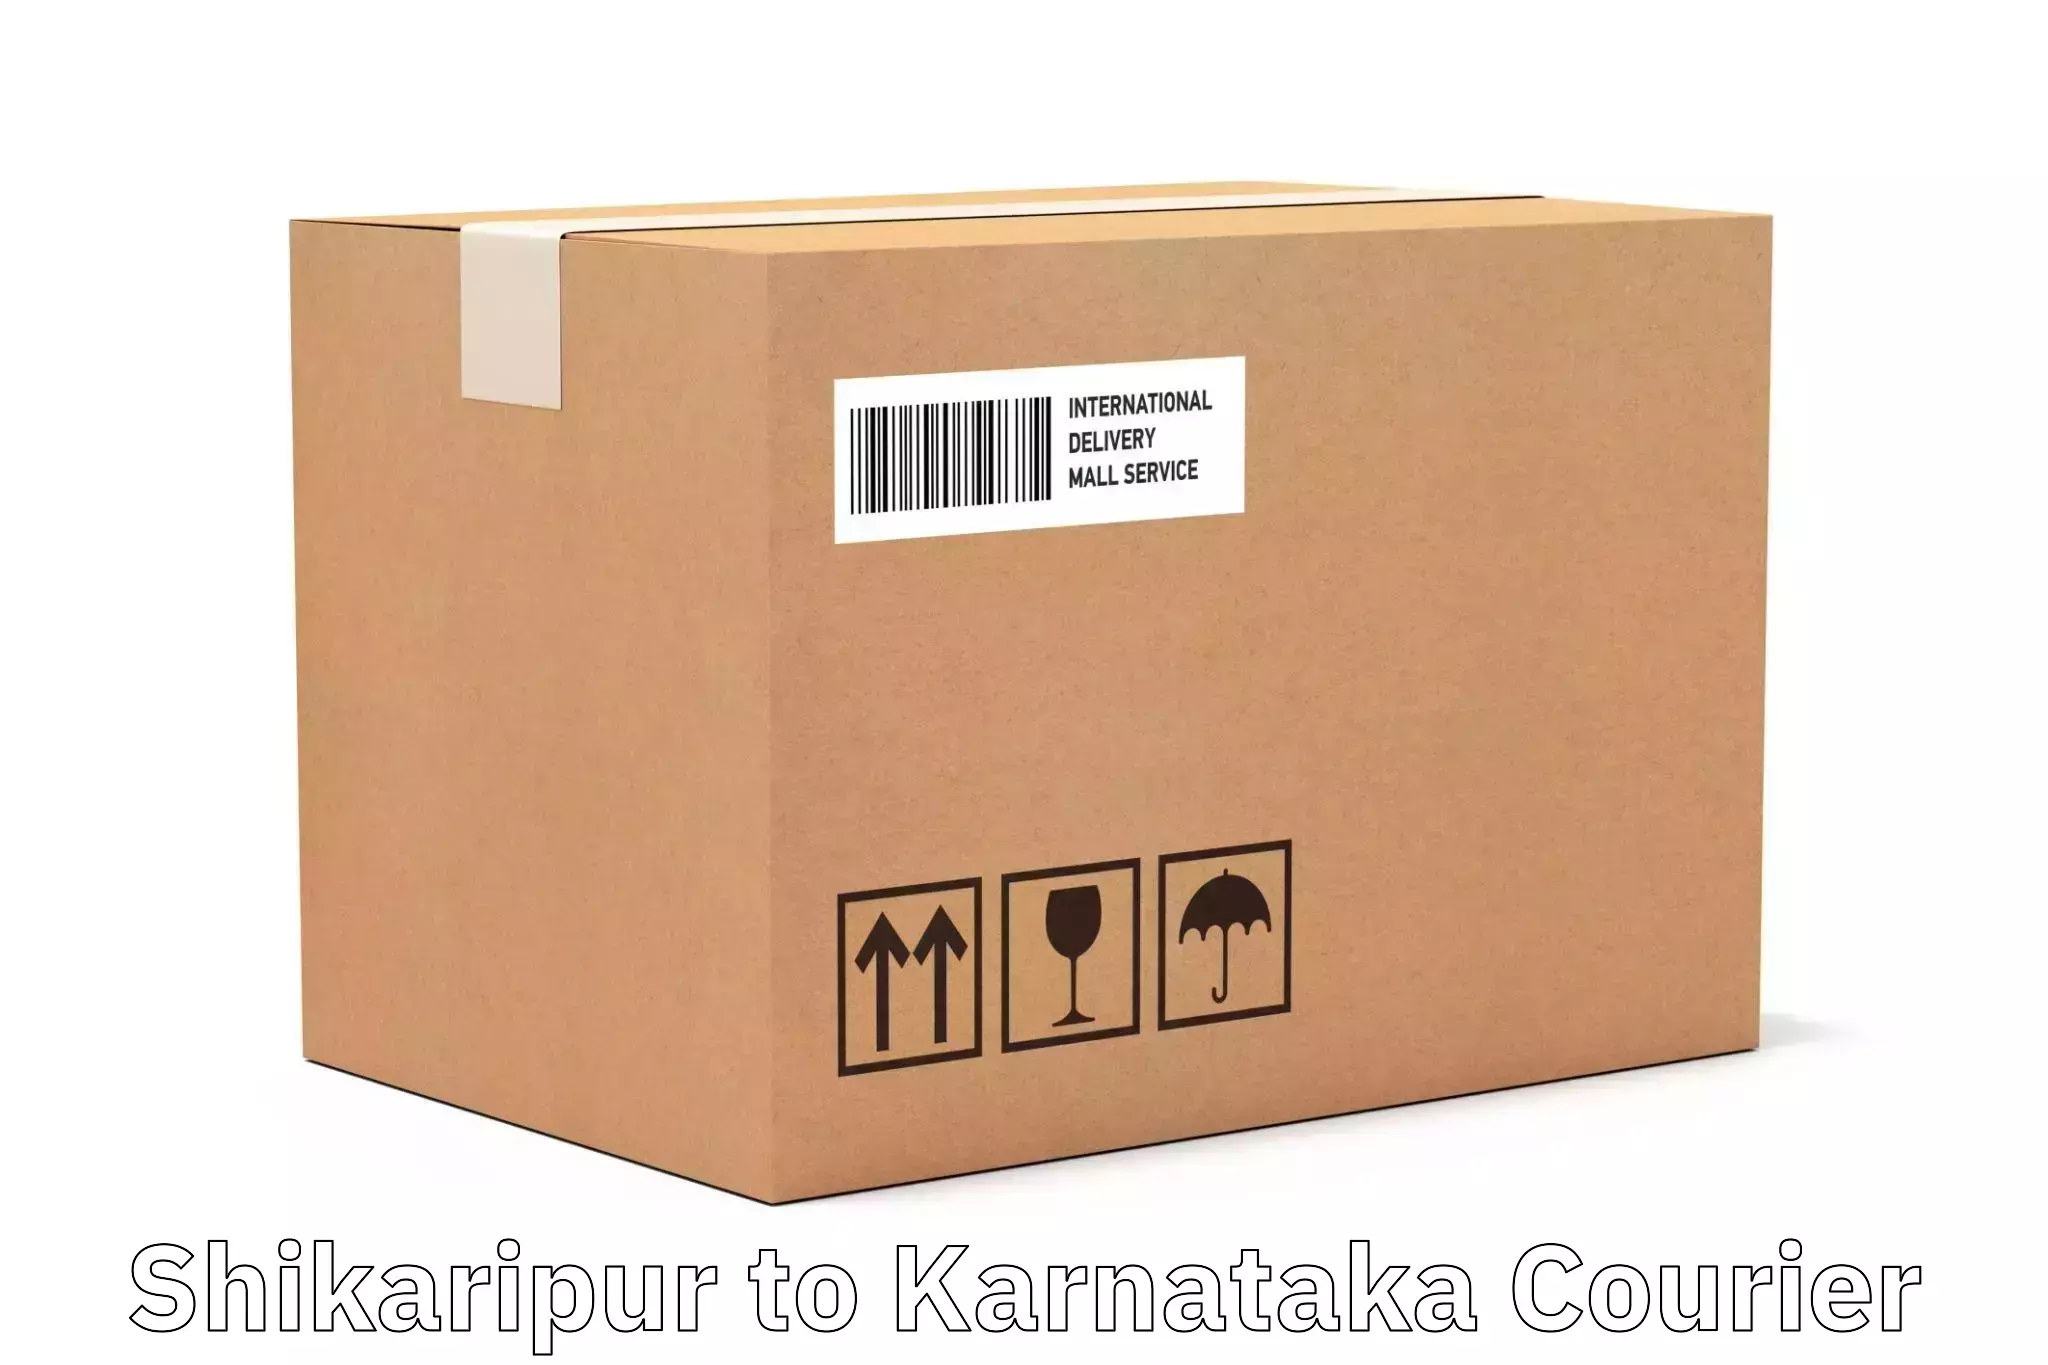 Innovative courier solutions Shikaripur to Shikaripur